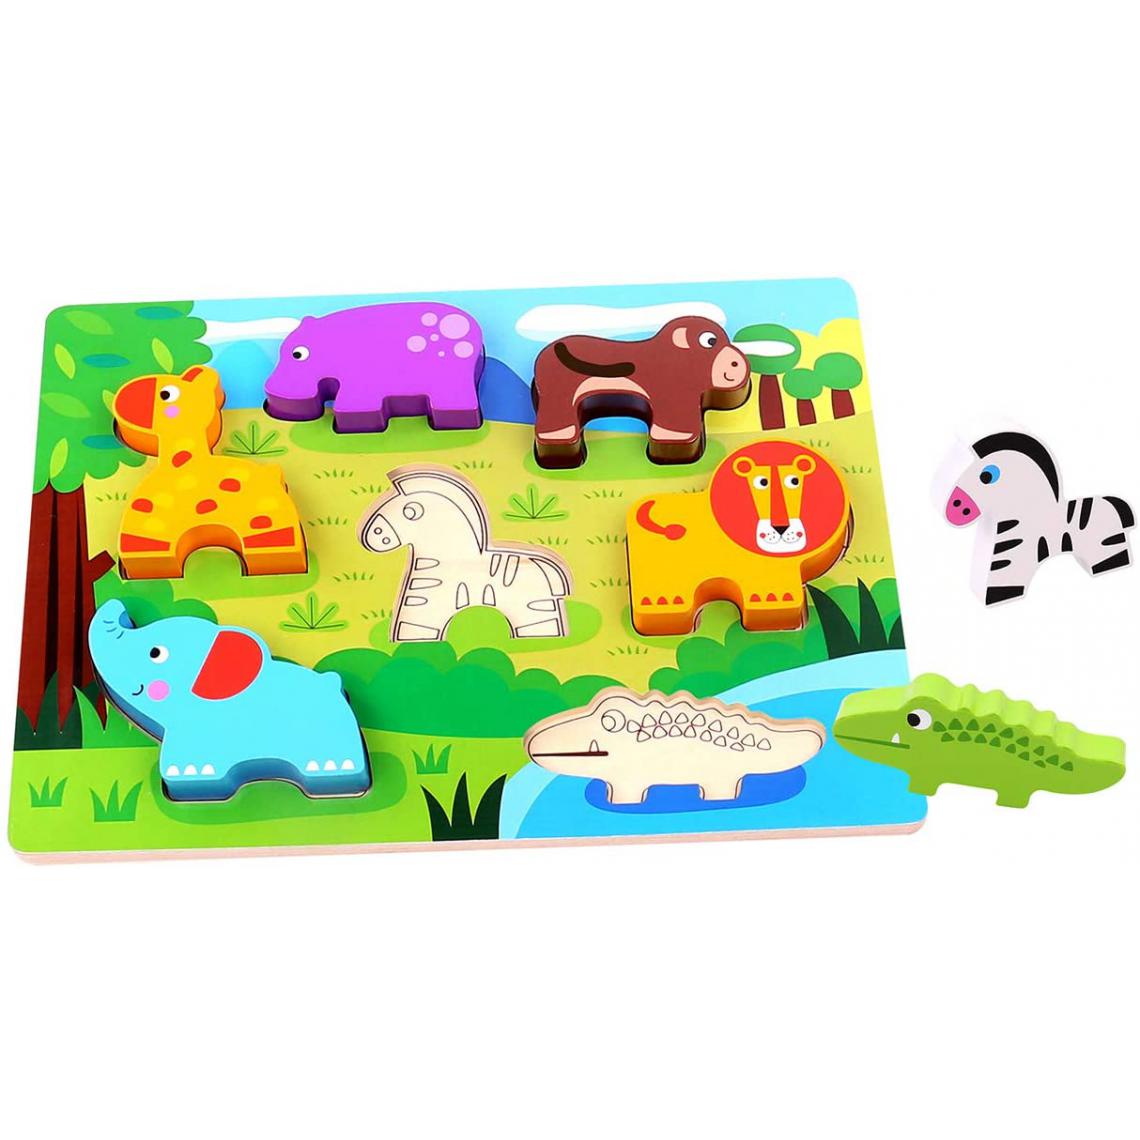 Inconnu - Puzzle animaux de la jungle en bois multicolore - 29.5x21x1.7 cm - Animaux